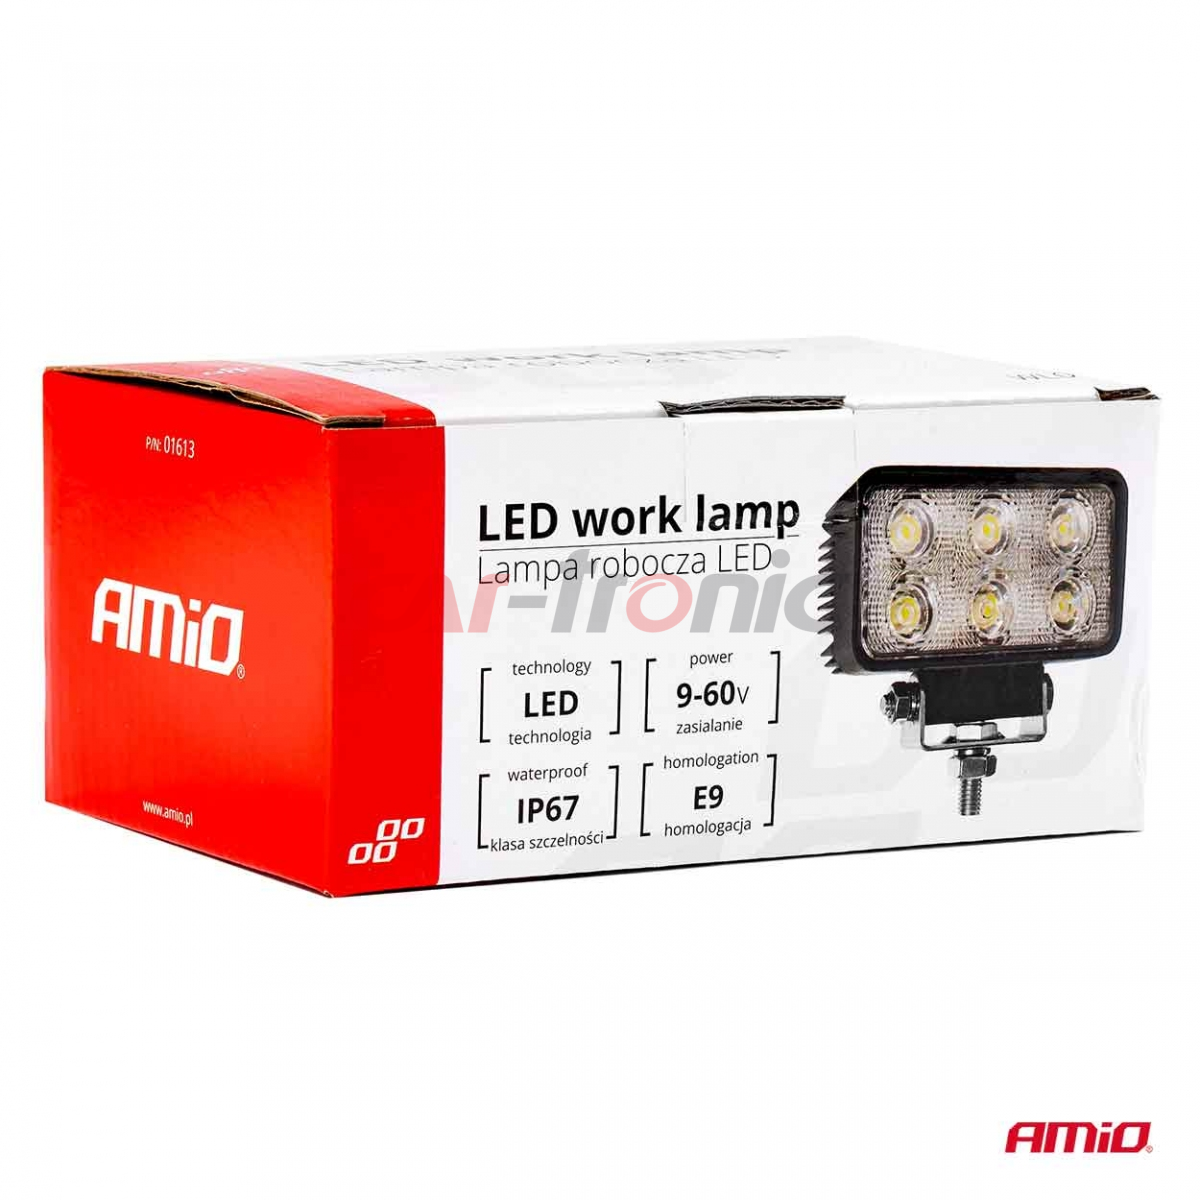 Lampa robocza halogen LED szperacz AWL02 6 LED AMIO-01613